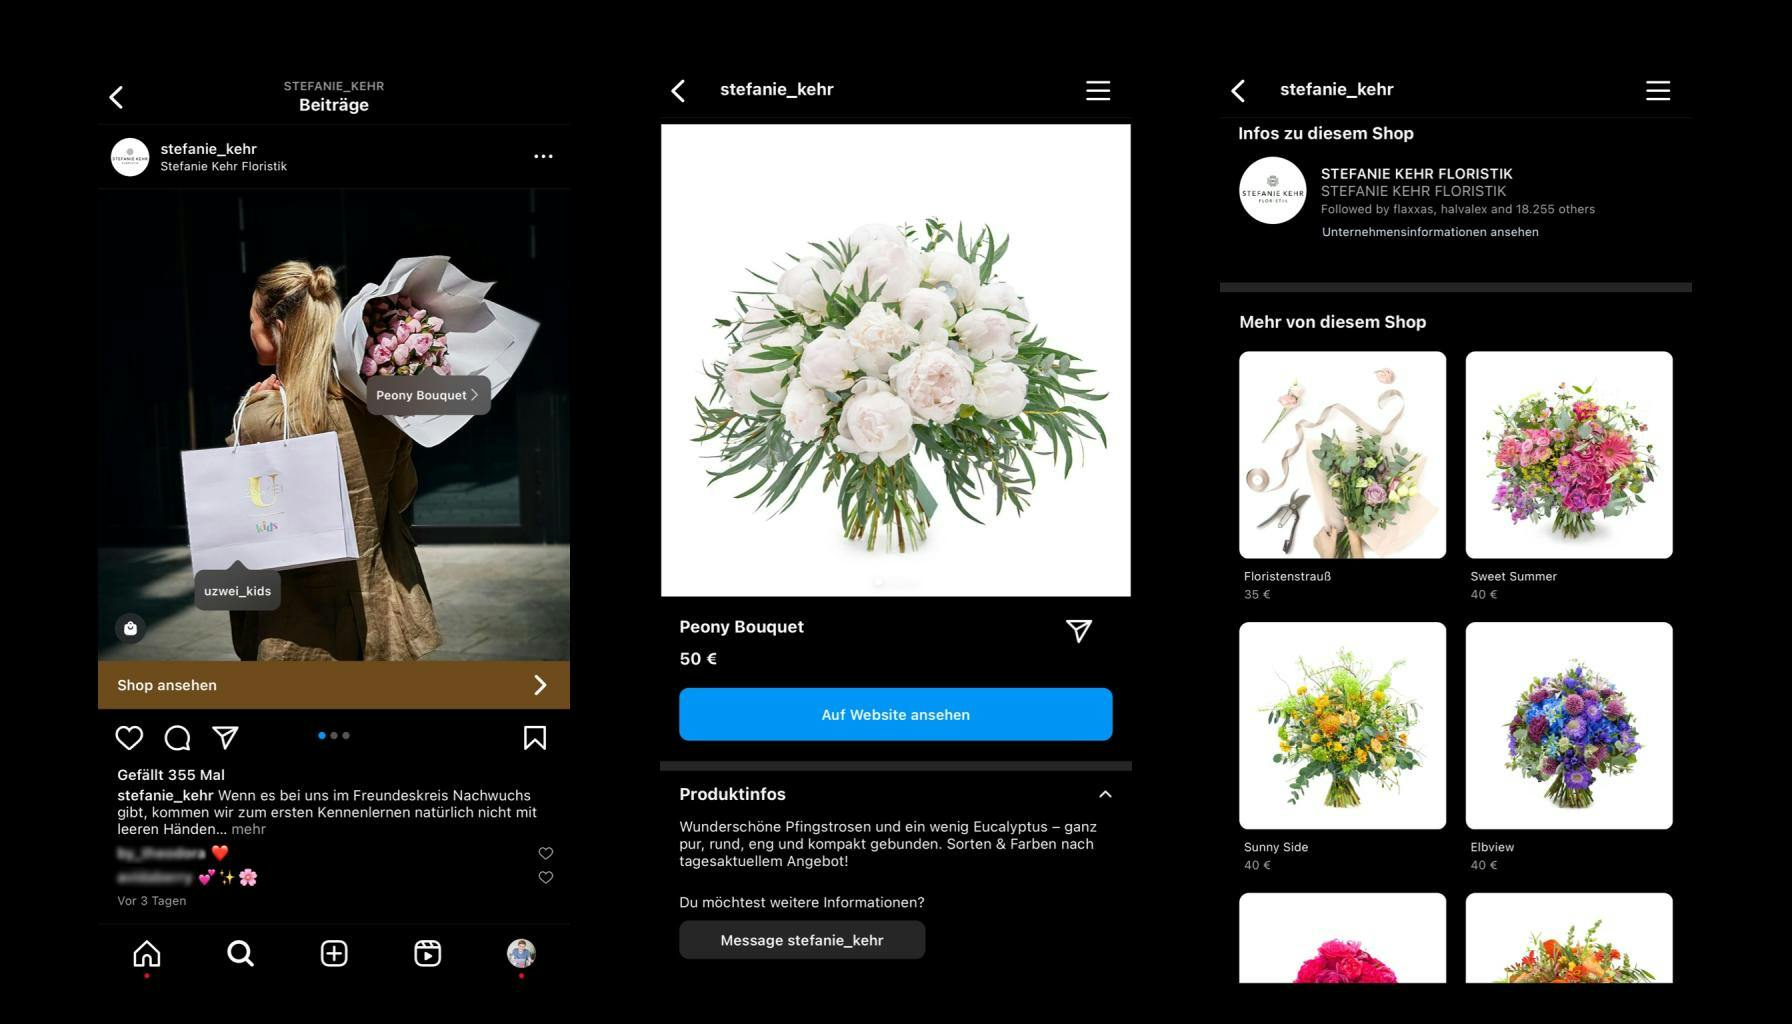 Screenshot 1: Instagram Profil von Stefanie Kehr mit verlinkten Produkten. Screenshot 2: Detaillierte Produktansicht eines Blumenstraußes auf Instagram. Screenshot 3: Übersicht weiterer Produkte im Instagram Shop von Stefanie Kehr.